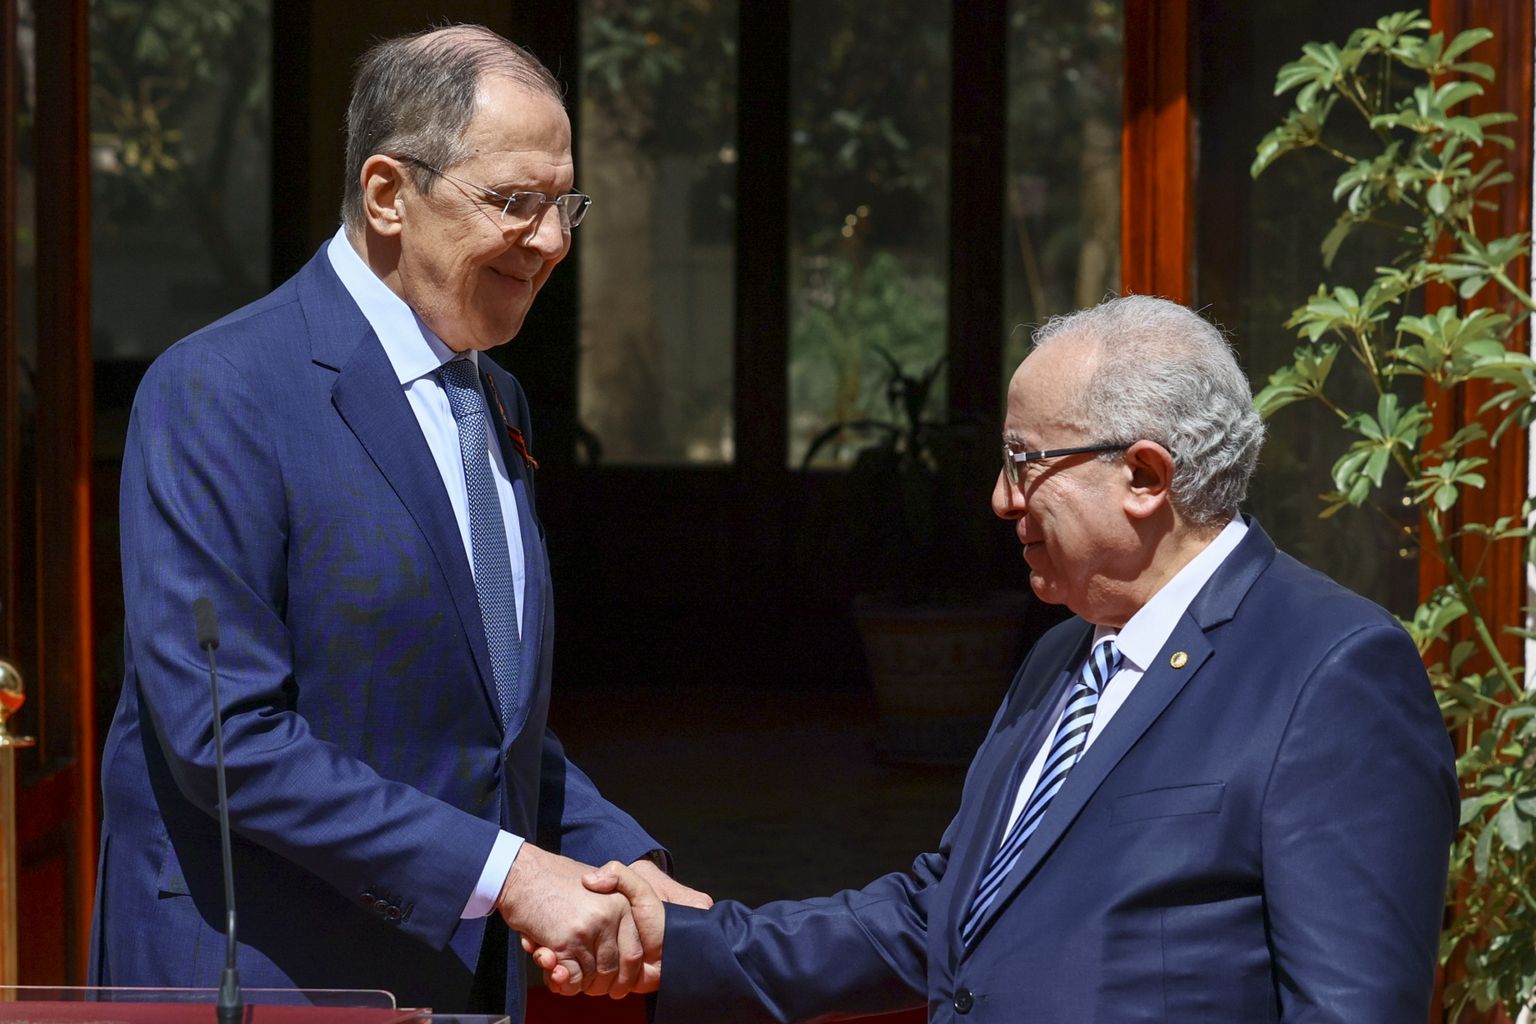 Venemaa välisminister Sergei Lavrov (vasakul) kohtumas Alžeeria presidendi Abdelmadjid Tebboune'iga Alžeerias tänavu 10. mail. Venemaa on viimasel ajal asunud otsima Aafrikast uusi sõpru.